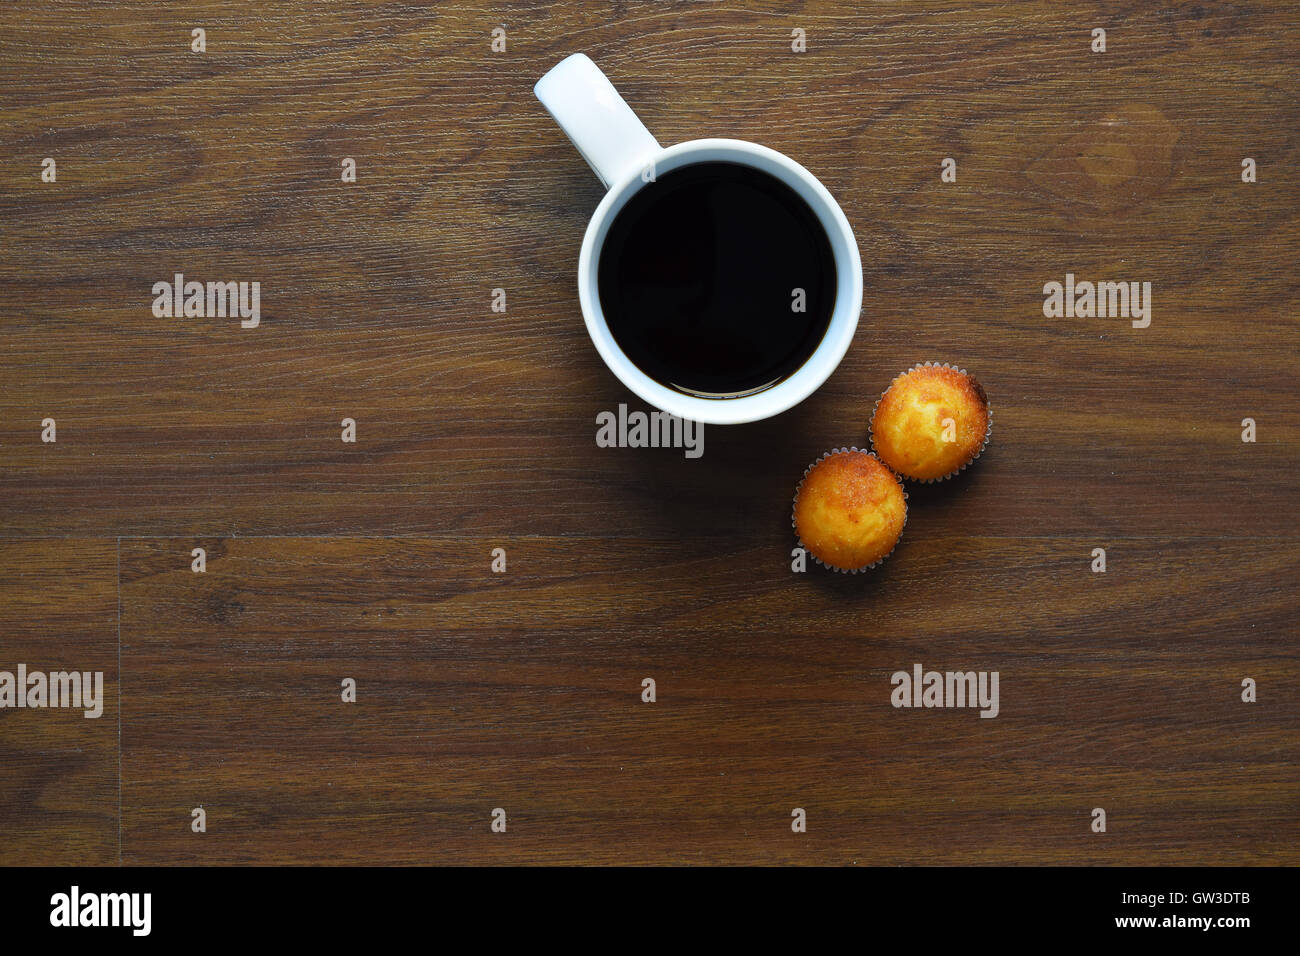 Vue de dessus de tasse de café et muffins sur une table en bois. Pause au travail, style de concept. Banque D'Images